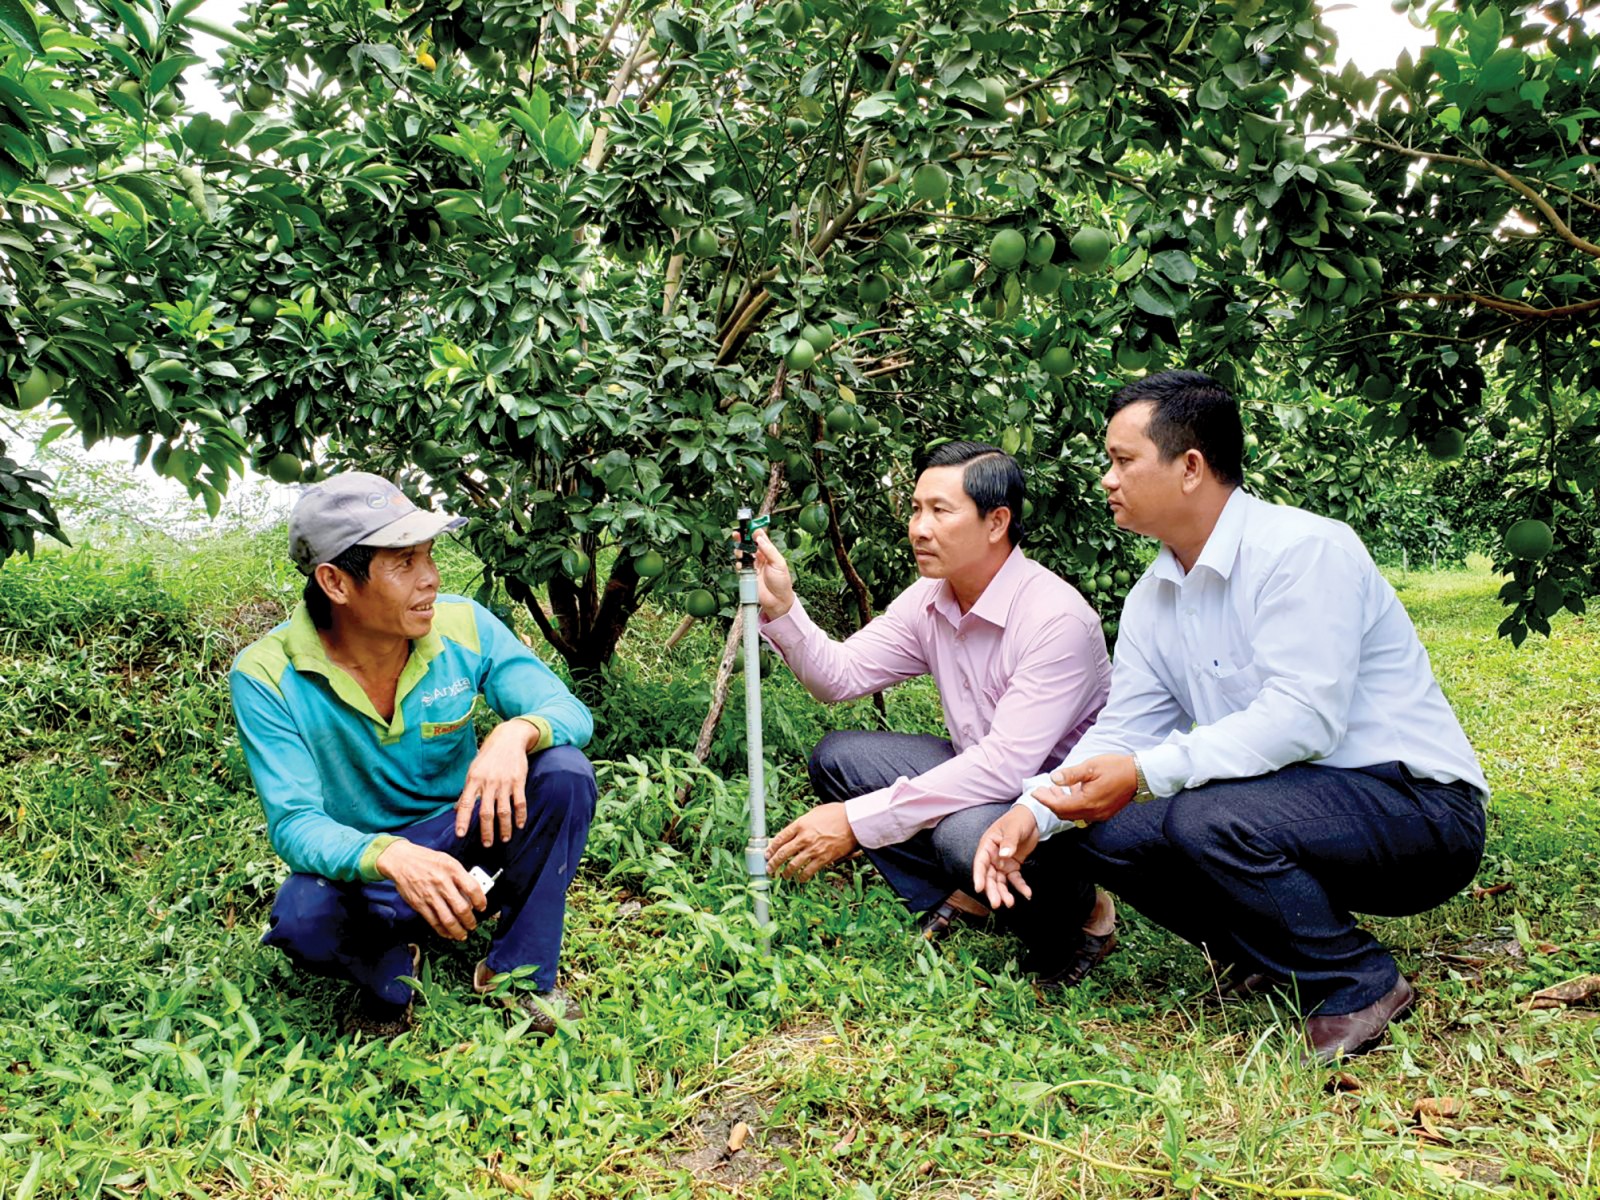 Hệ thống phun tưới tự động trên vườn cam mật của nông dân Lê Quang Vinh, ngụ tại ấp Đông Hòa, xã Đông Hiệp, huyện Cờ Đỏ. Ảnh: HỒNG VÂN